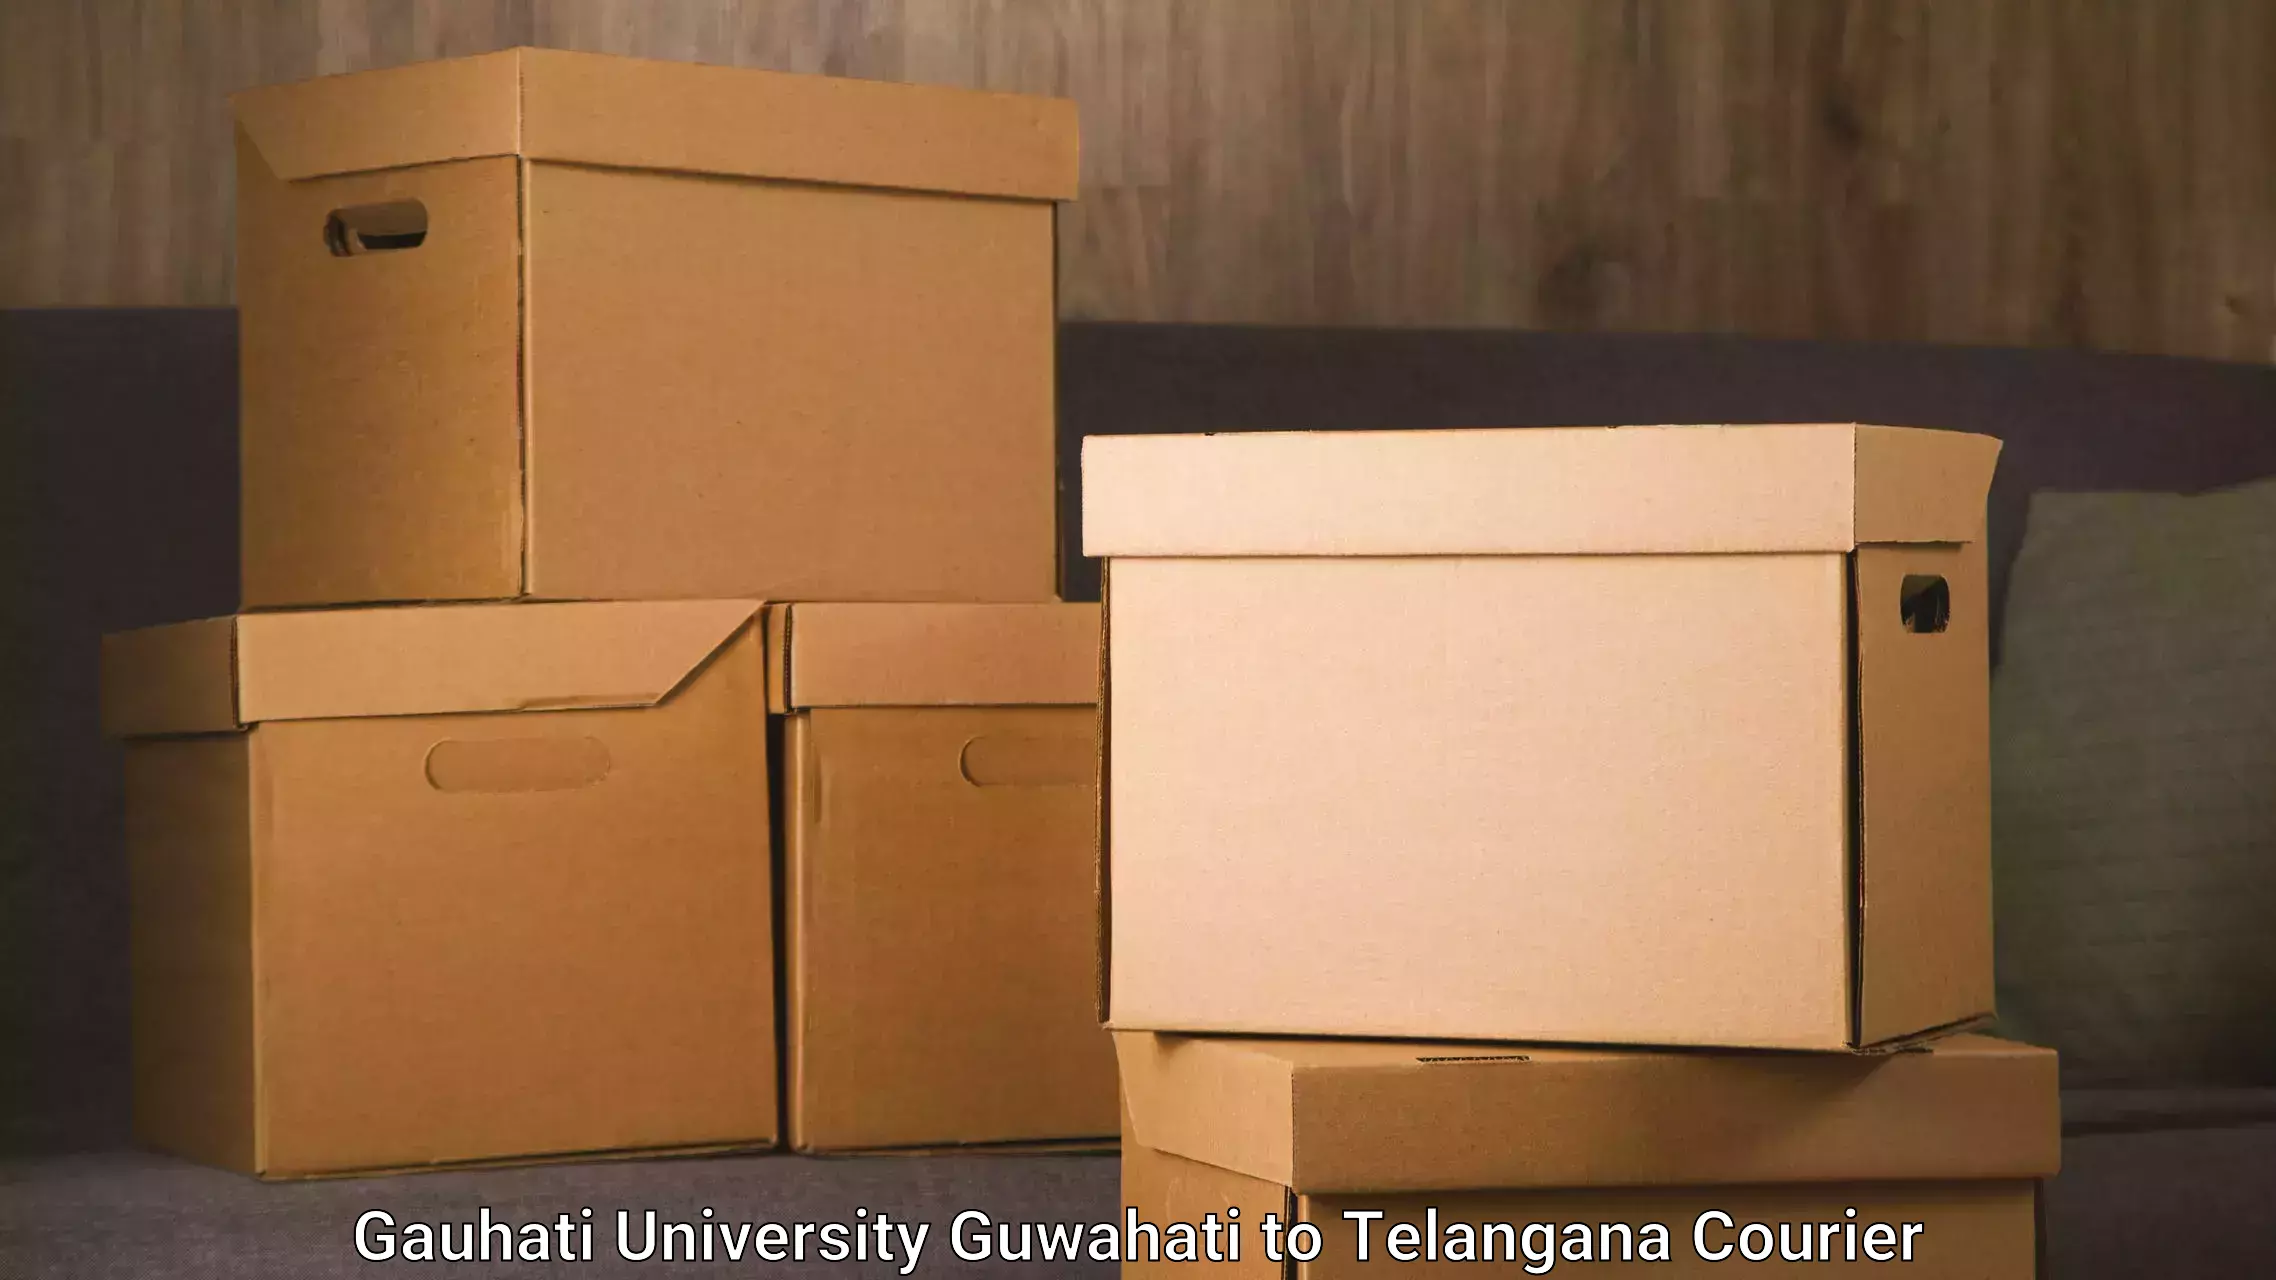 Express package handling Gauhati University Guwahati to Manneguda